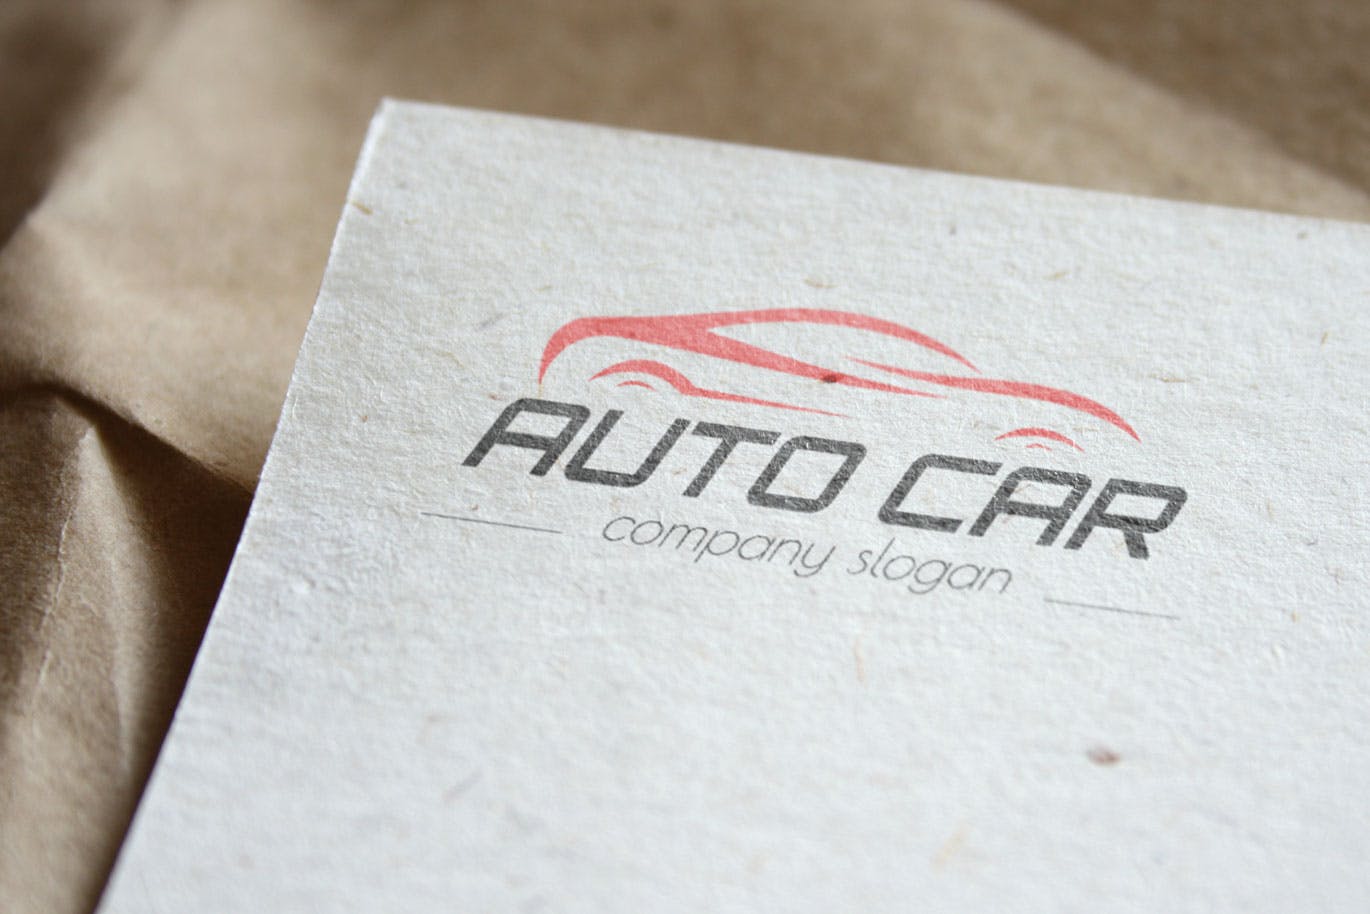 汽车相关企业品牌Logo设计第一素材精选模板 Auto Car Business Logo Template插图(3)